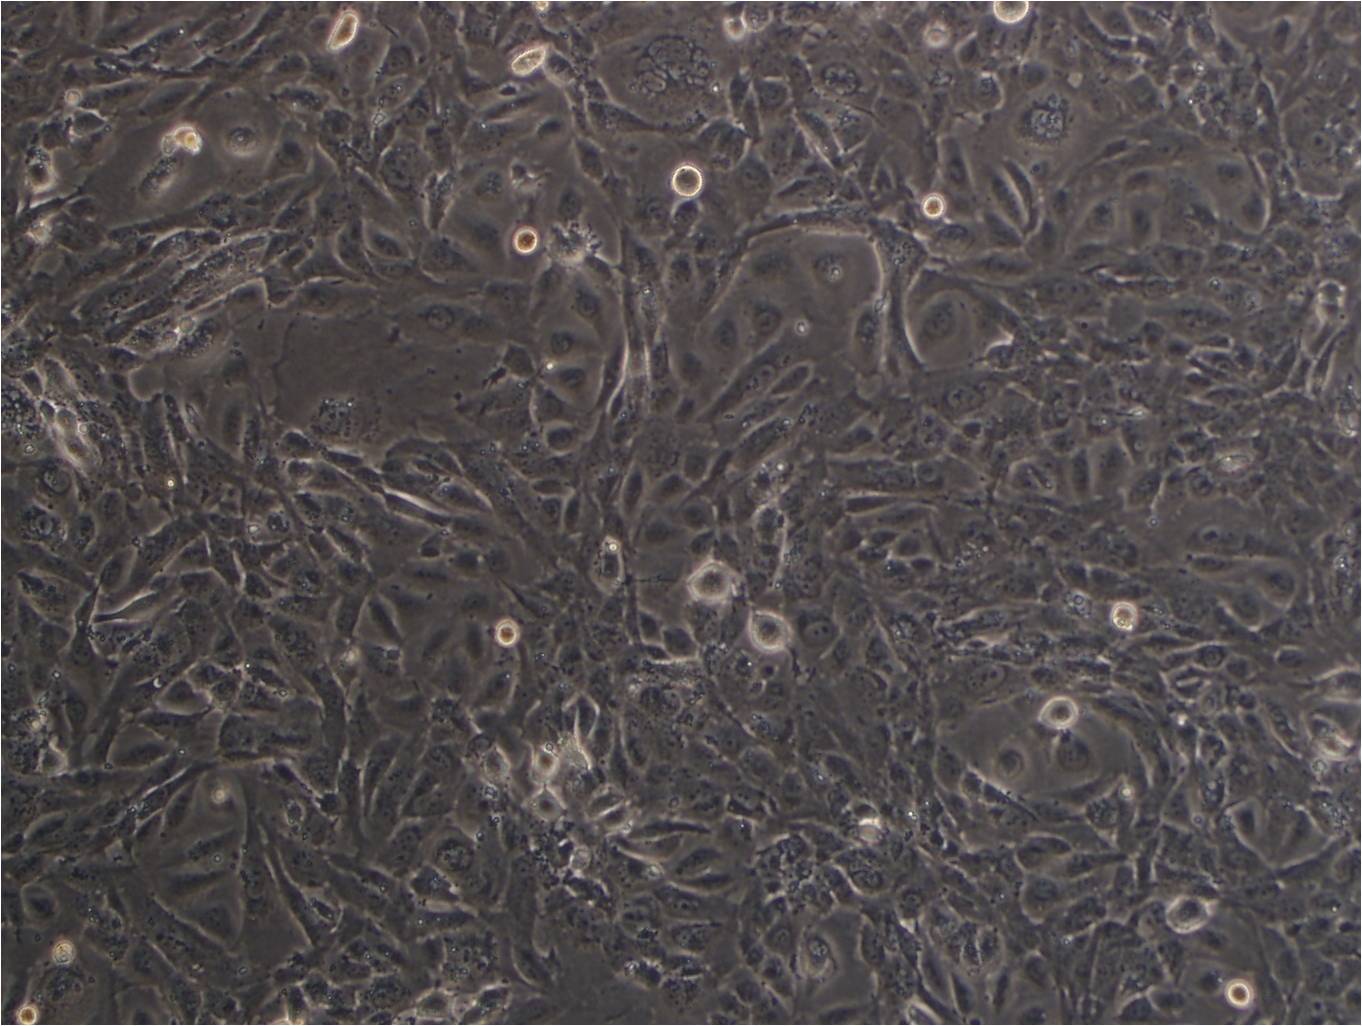 MPC-11 cell line小鼠浆细胞瘤细胞系,MPC-11 cell line